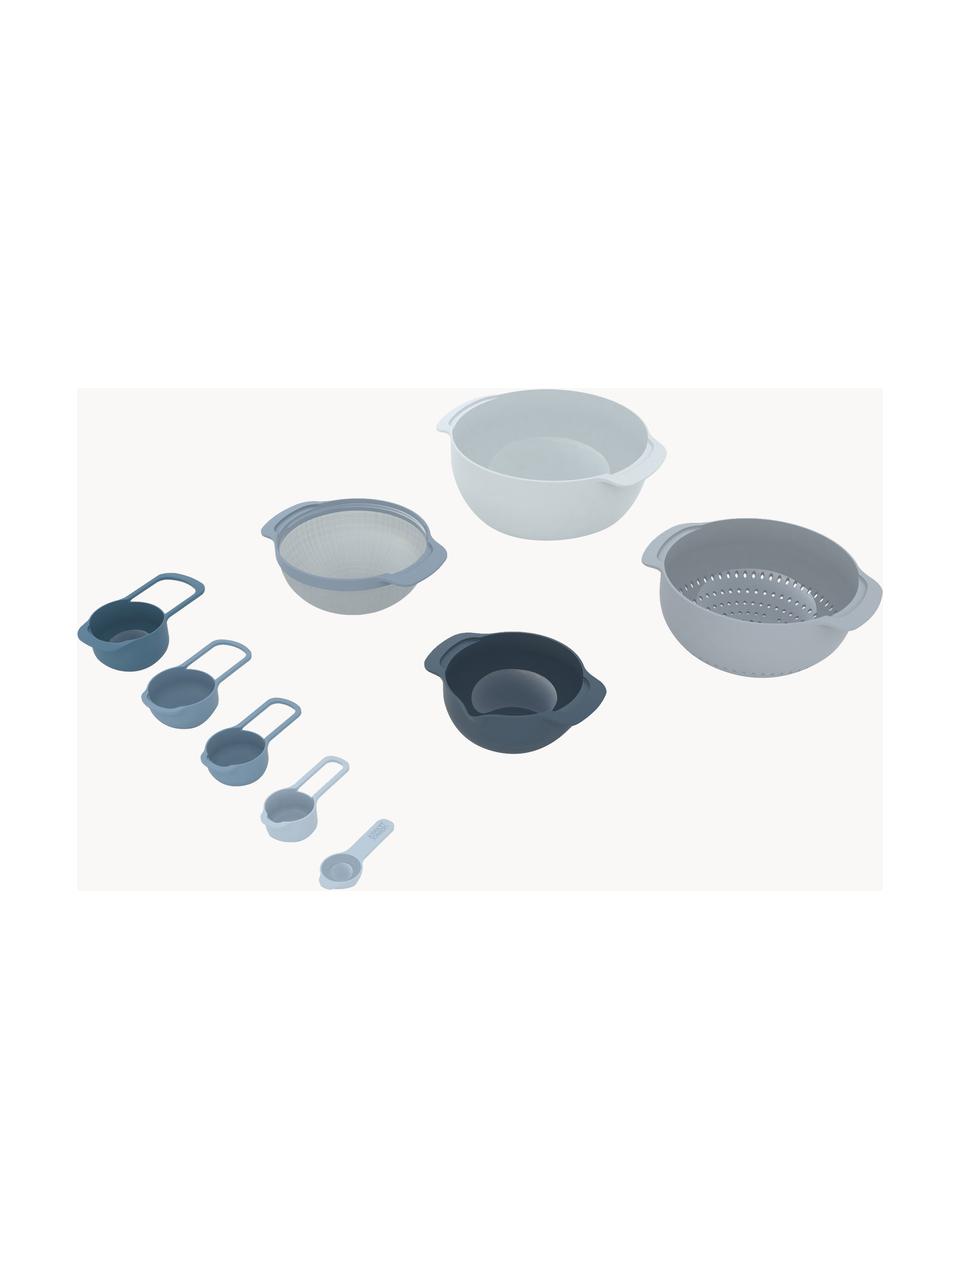 Schalen en maatlepel Nest Plus, set van 9, Polypropyleen, edelstaal, Blauw- en grijstinten, Set met verschillende formaten